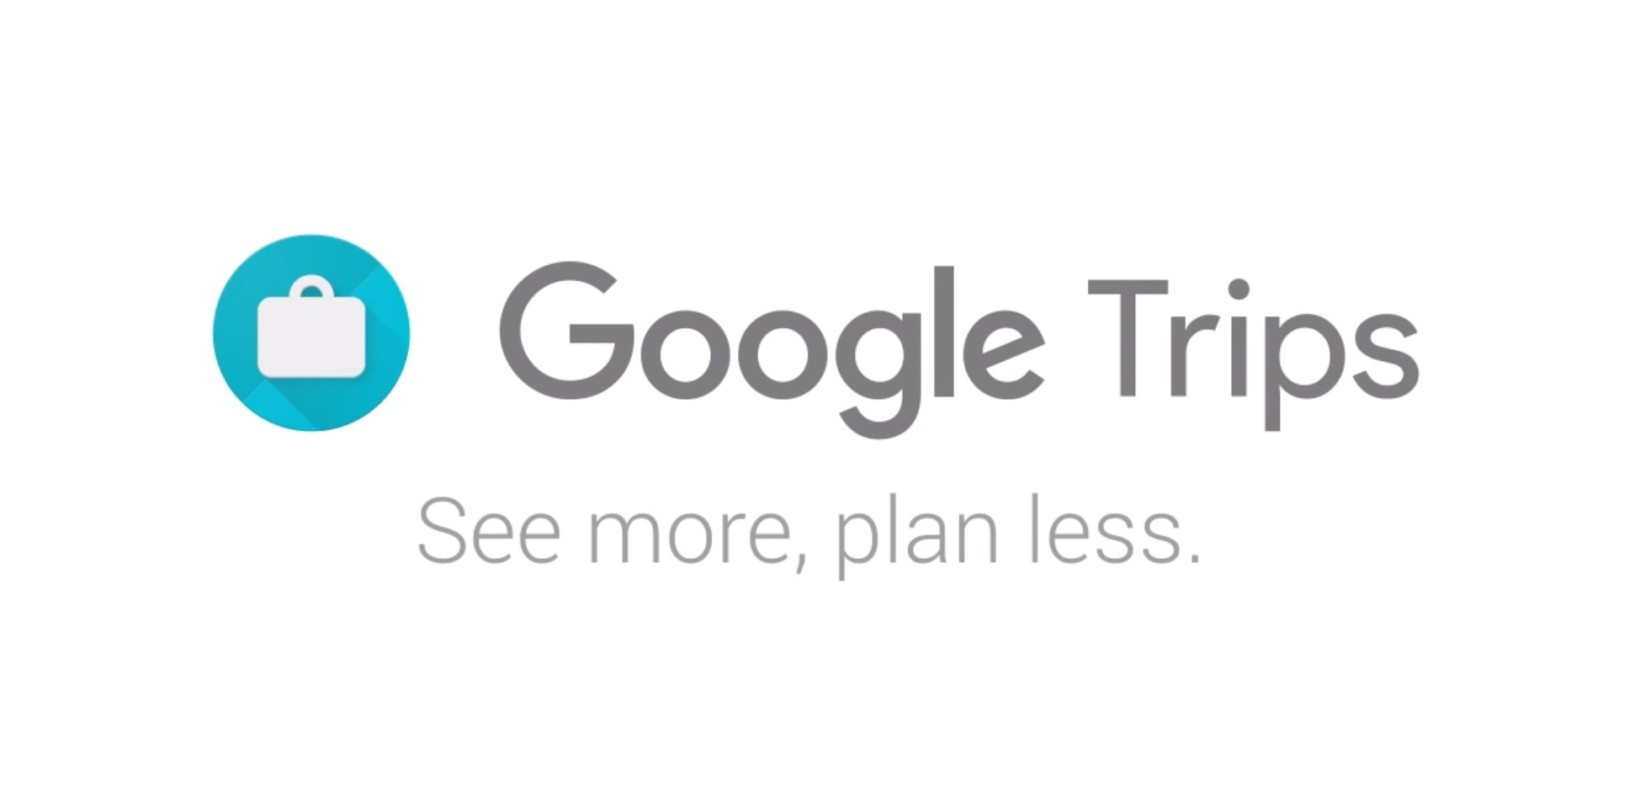 Aplikasi Perjalanan baru Google menghilangkan stres karena merencanakan liburan